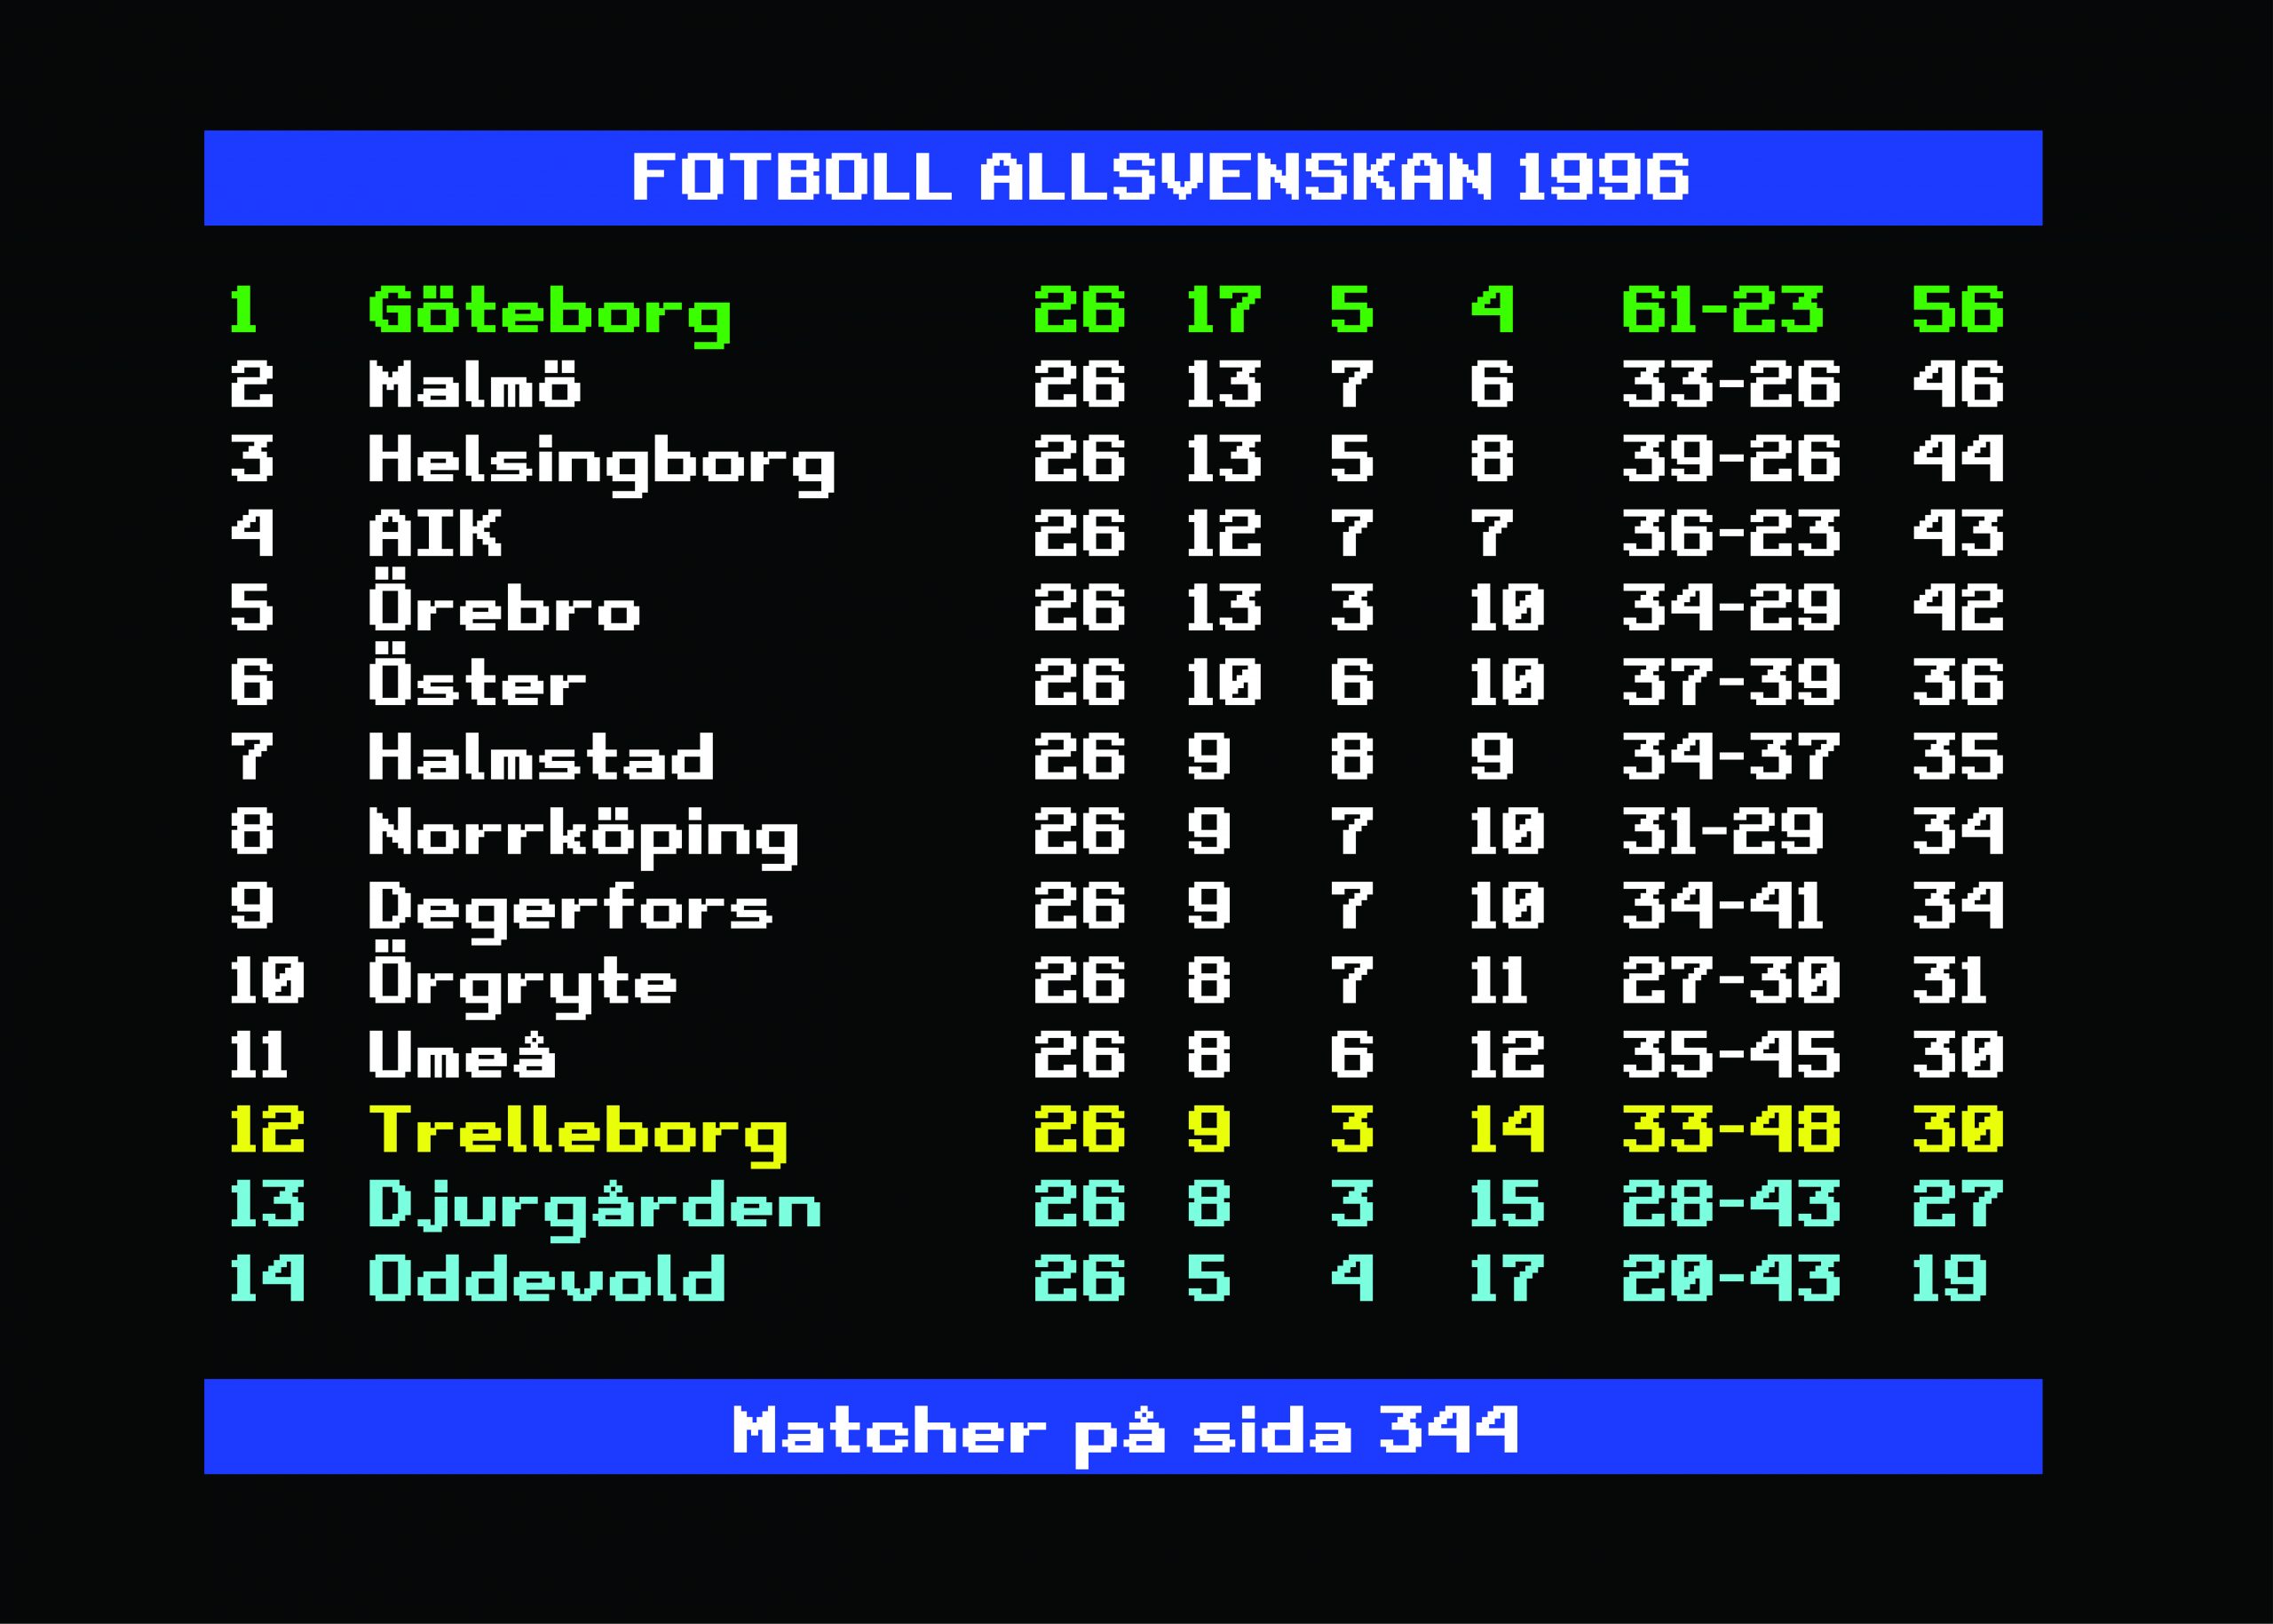 Den Allsvenska Fotbollssäsongen 1996: En Underhållande Kavalkad av Spänning och Rivalitet